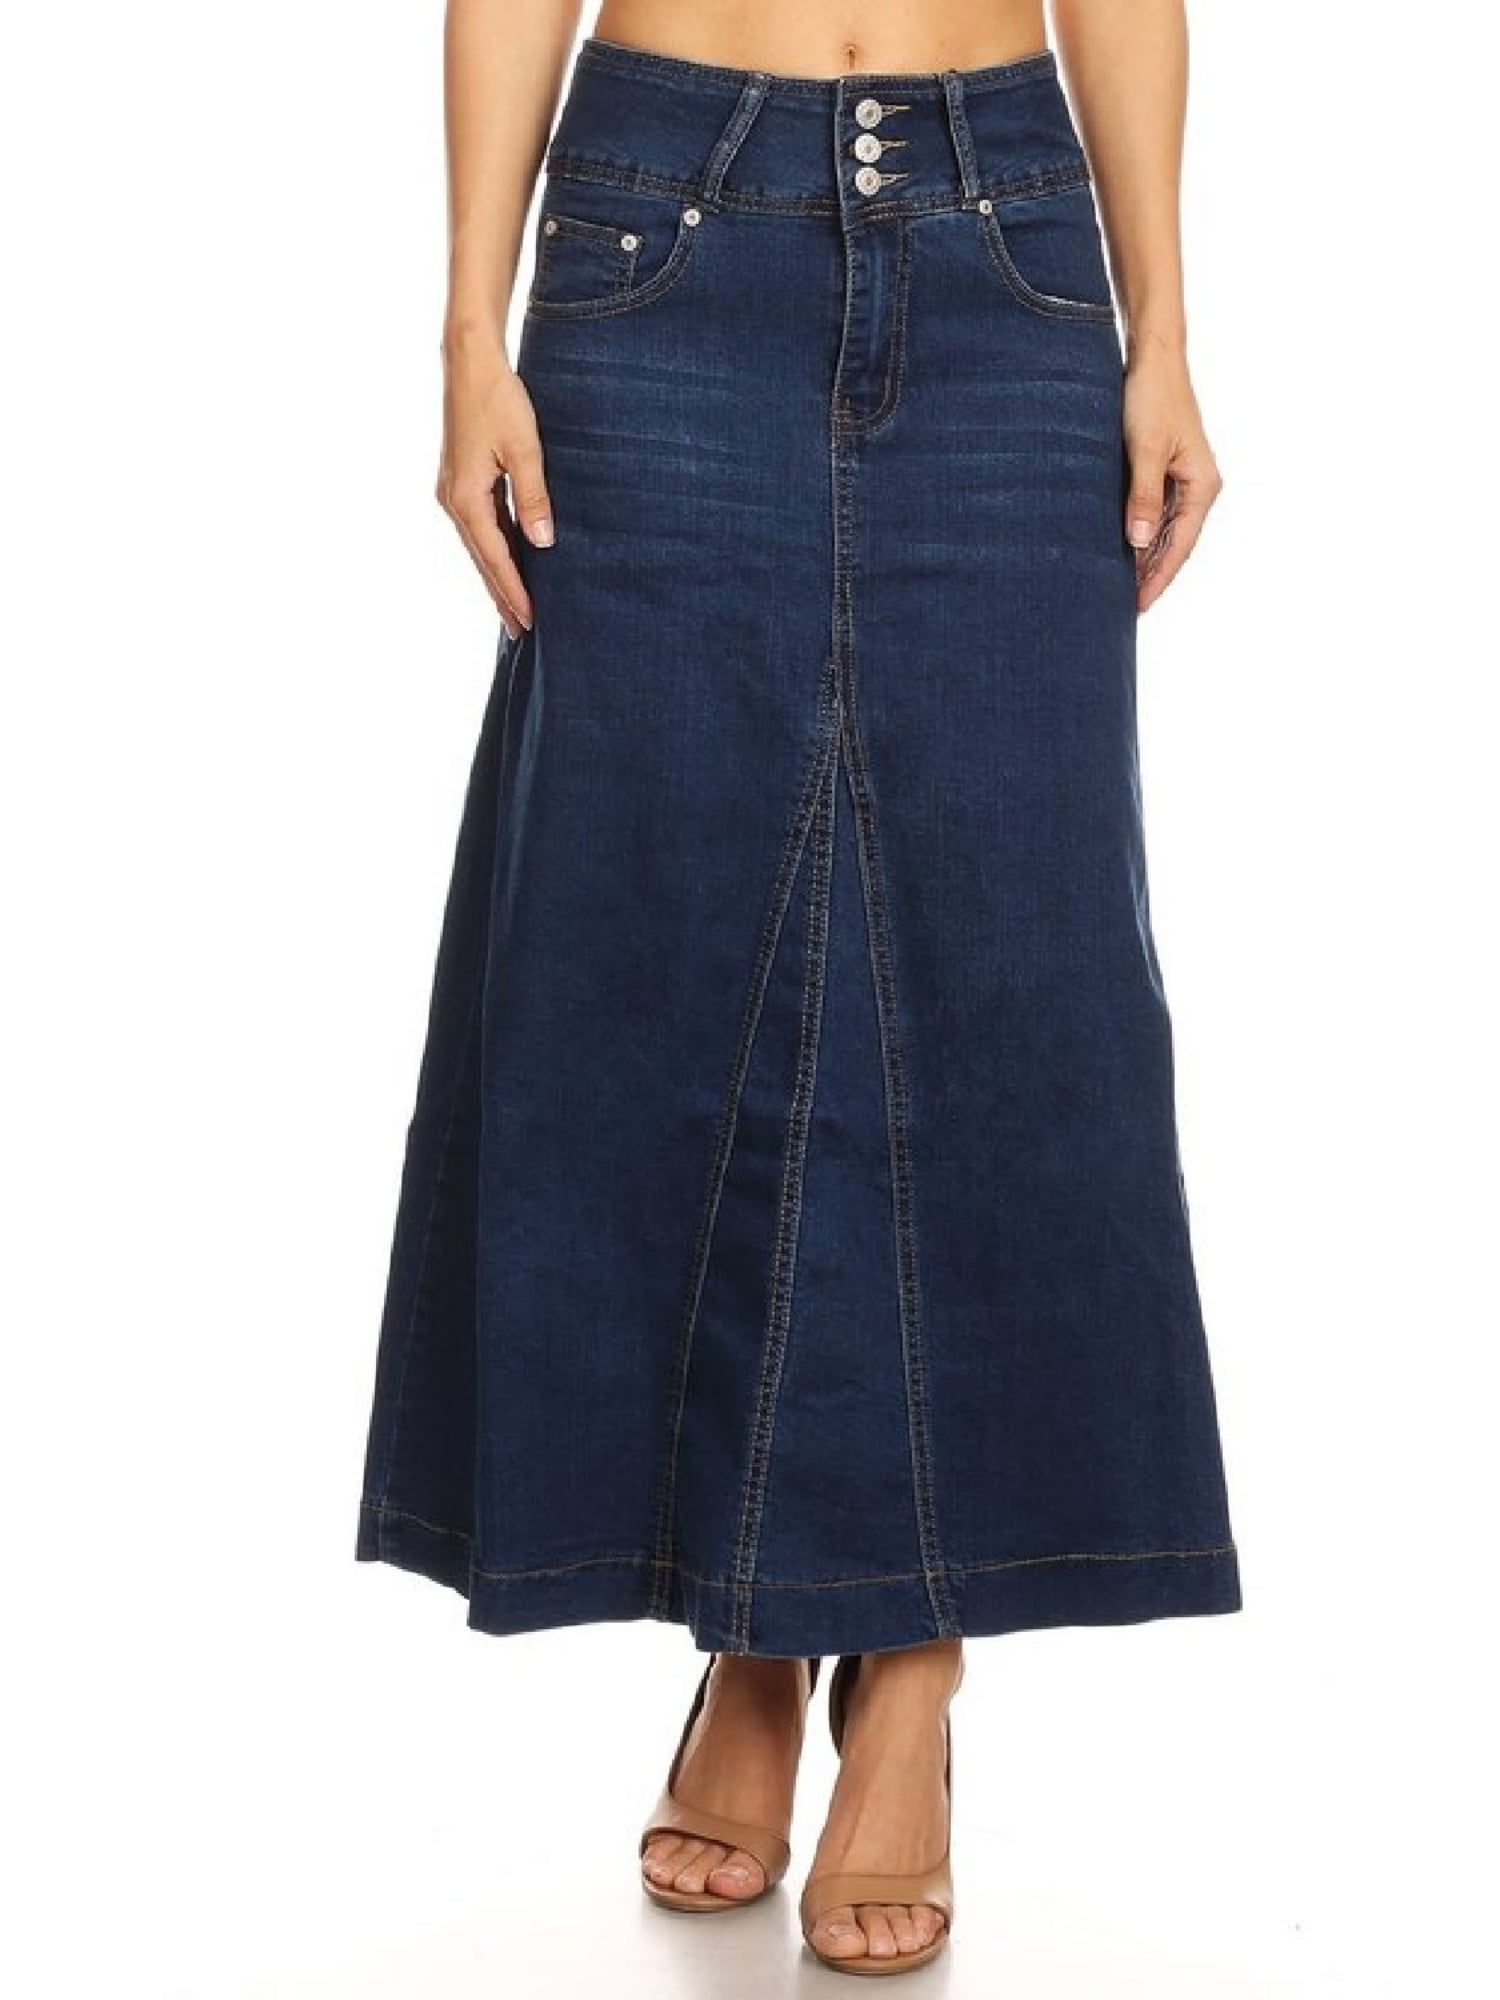 Fashion2love - Women's Plus / Juniors Size High Rise A-Line Long Jeans ...